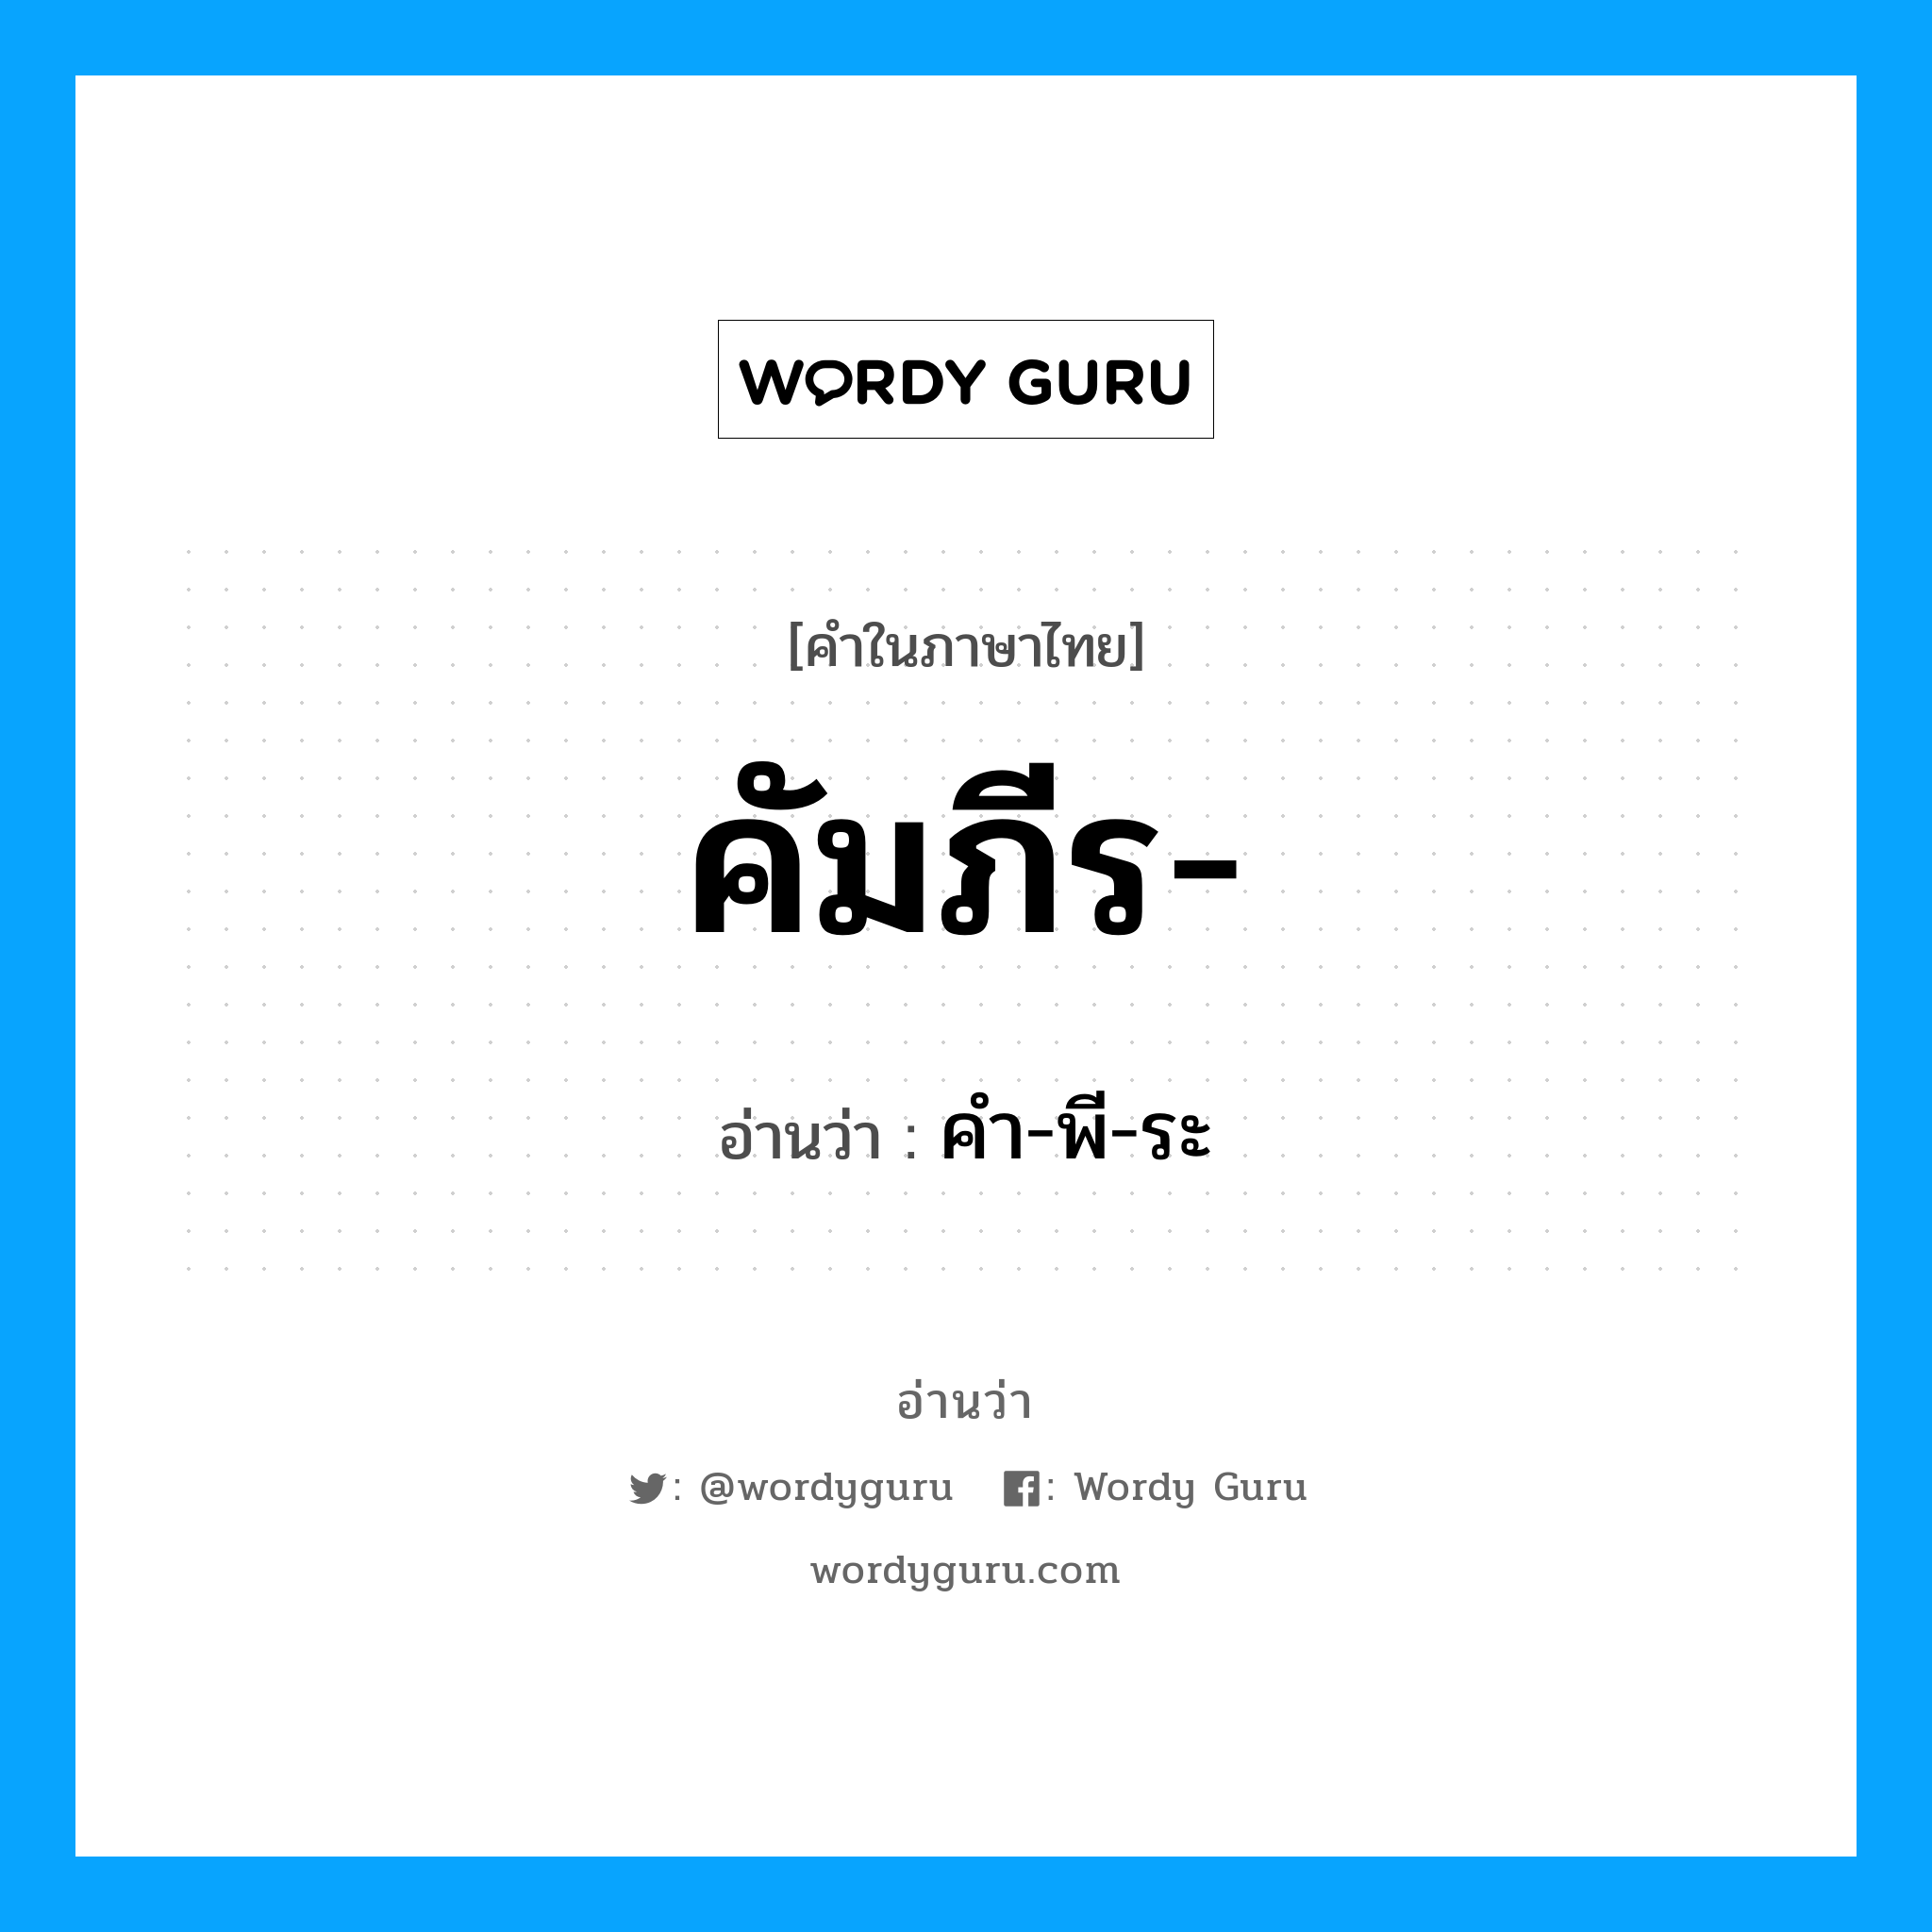 คัมภีร อ่านว่า?, คำในภาษาไทย คัมภีร- อ่านว่า คํา-พี-ระ